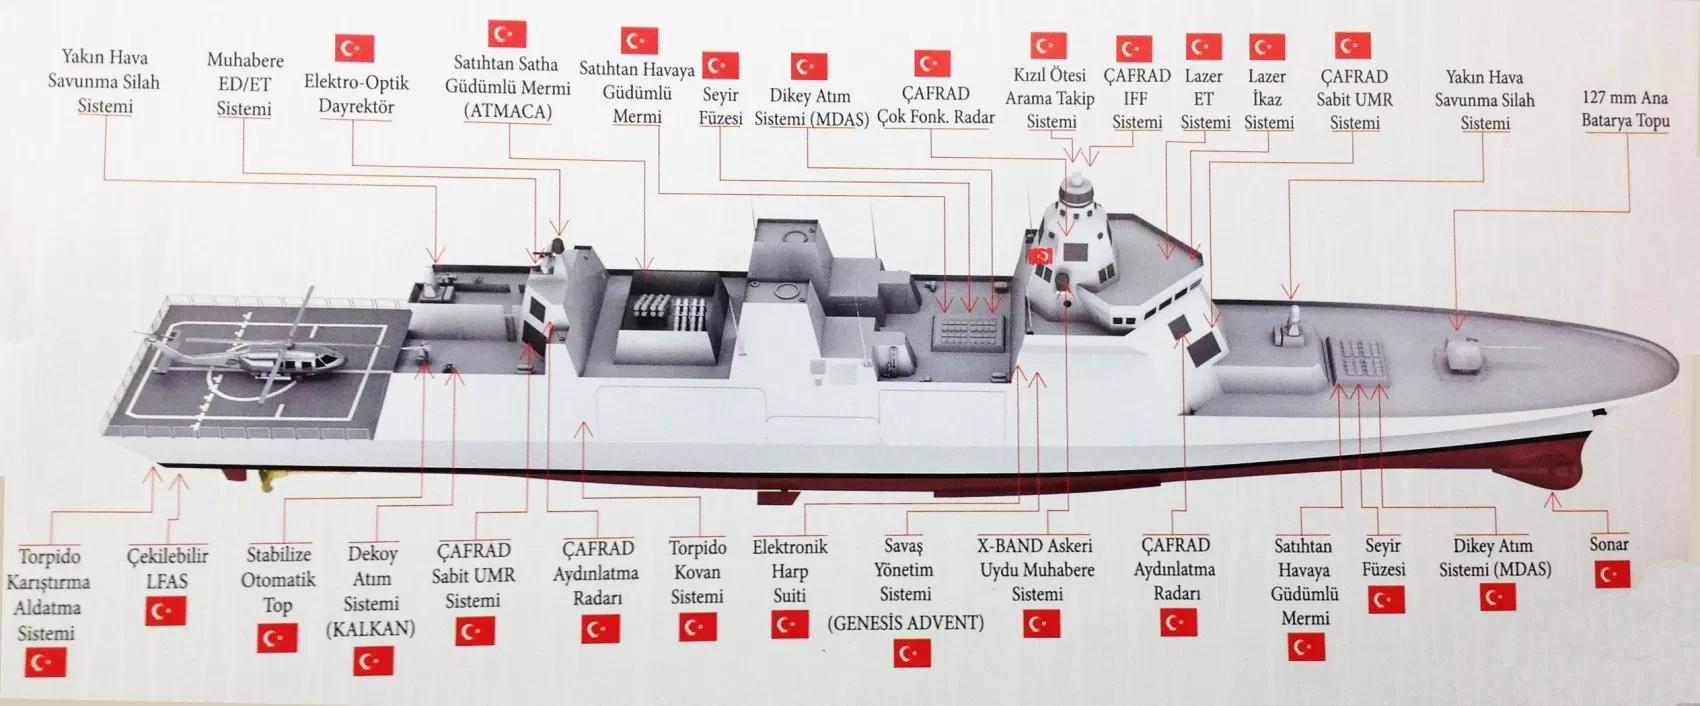 原创浑身都是雷达!土耳其国产驱逐舰技术疯狂,有一项比肩中美